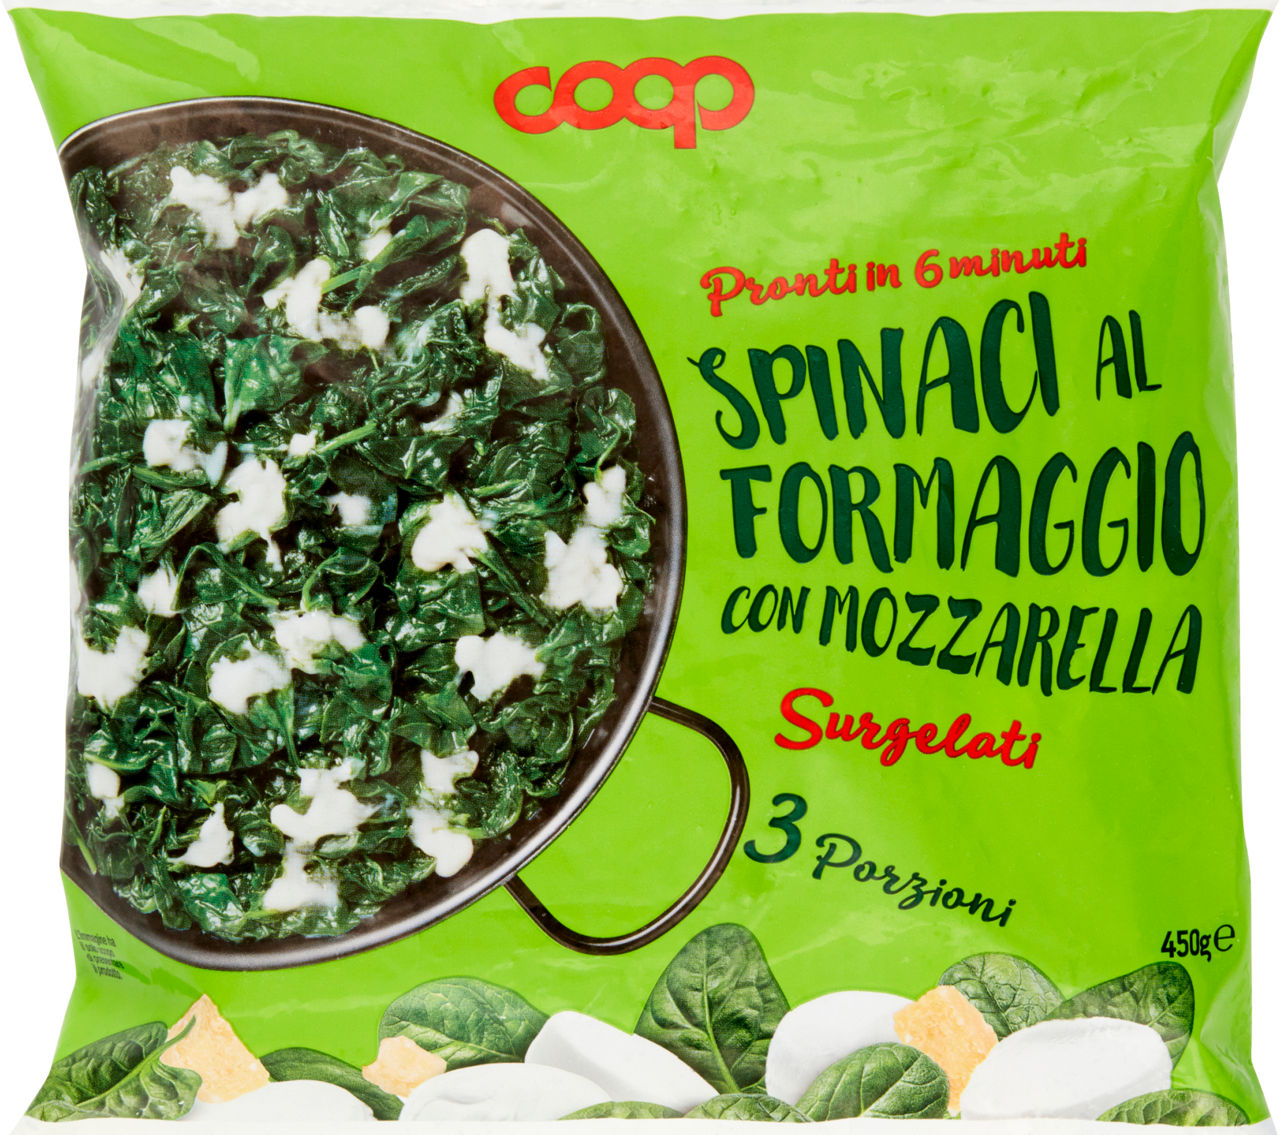 Spinaci al formaggio coop busta surg. g 450